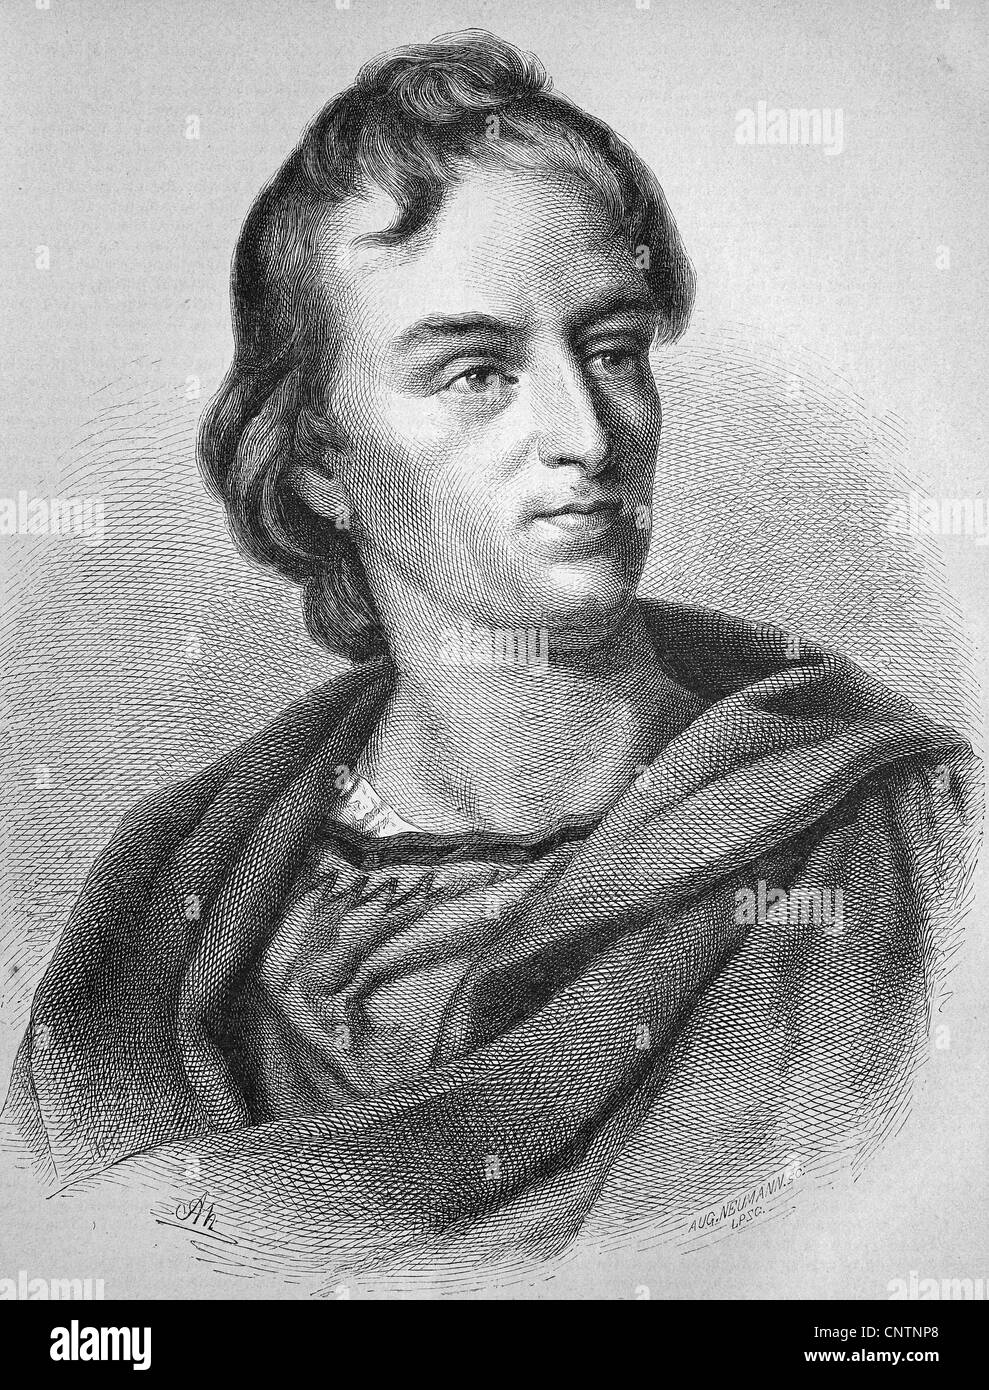 Johann Christoph Friedrich von Schiller, 1759-1805, poète allemand, philosophe et historien, historique de la gravure sur bois, ca. 1880 Banque D'Images